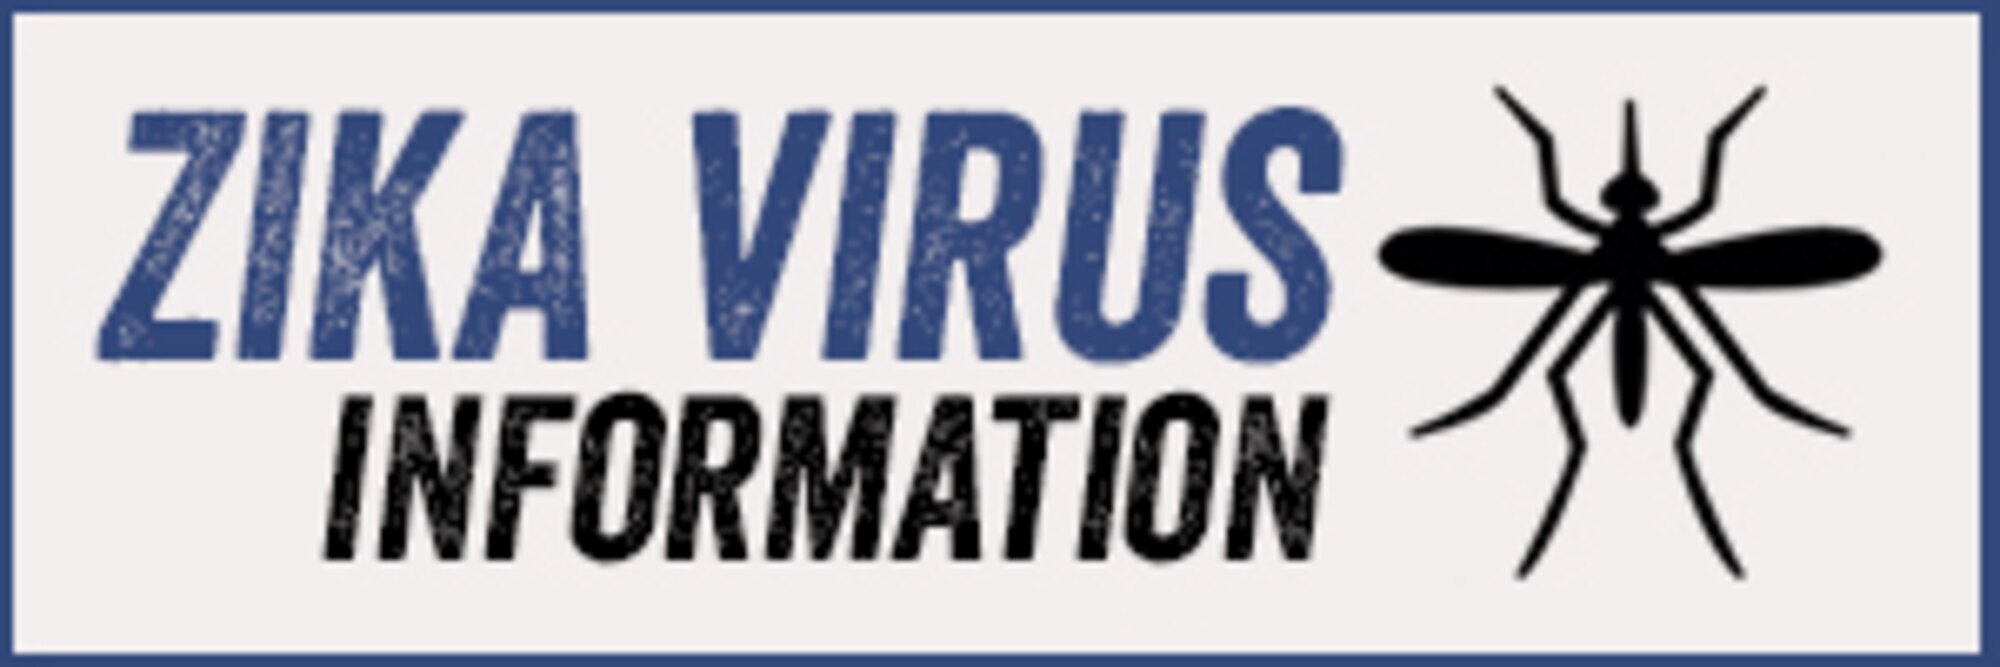 Zika Virus Information from Health.mil/zika 